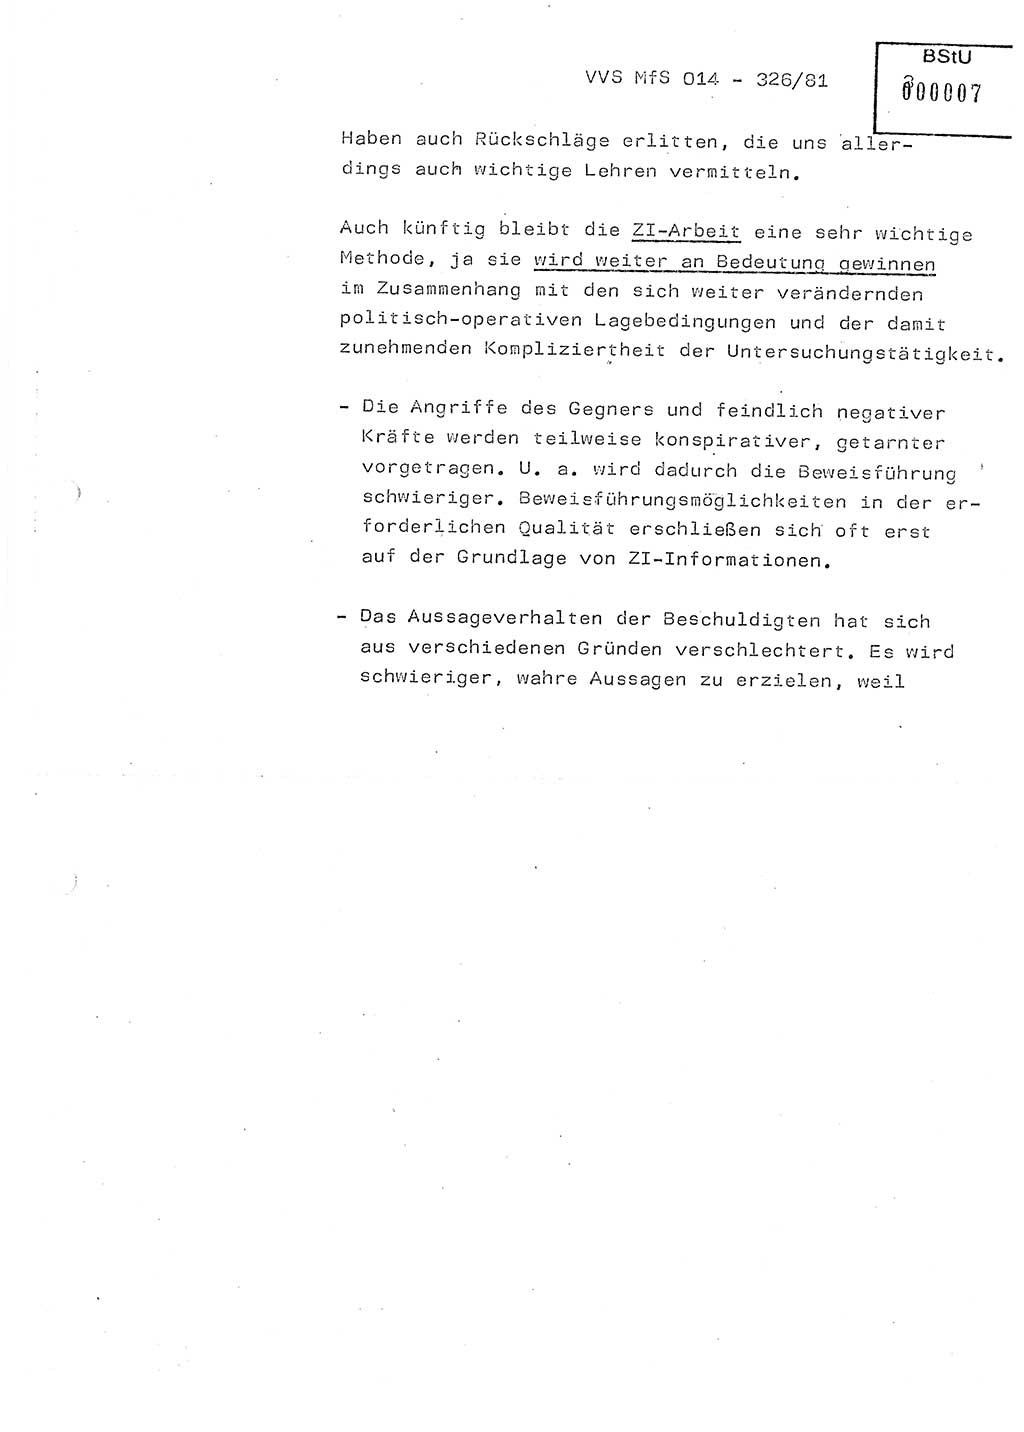 Thesen zum Einführungsvortrag für die Schulung zur Richtlinie Nr. 2/81 [zur Arbeit mit Zelleninformatoren (ZI)] des Genossen Minister (Generaloberst Erich Mielke), Ministerium für Staatssicherheit (MfS) [Deutsche Demokratische Republik (DDR)], Hauptabteilung (HA) Ⅸ, Vertrauliche Verschlußsache (VVS) 014-326/81, Berlin 1981, Seite 3 (Th. Sch. RL 2/81 MfS DDR HA Ⅸ VVS 014-326/81 1981, S. 3)